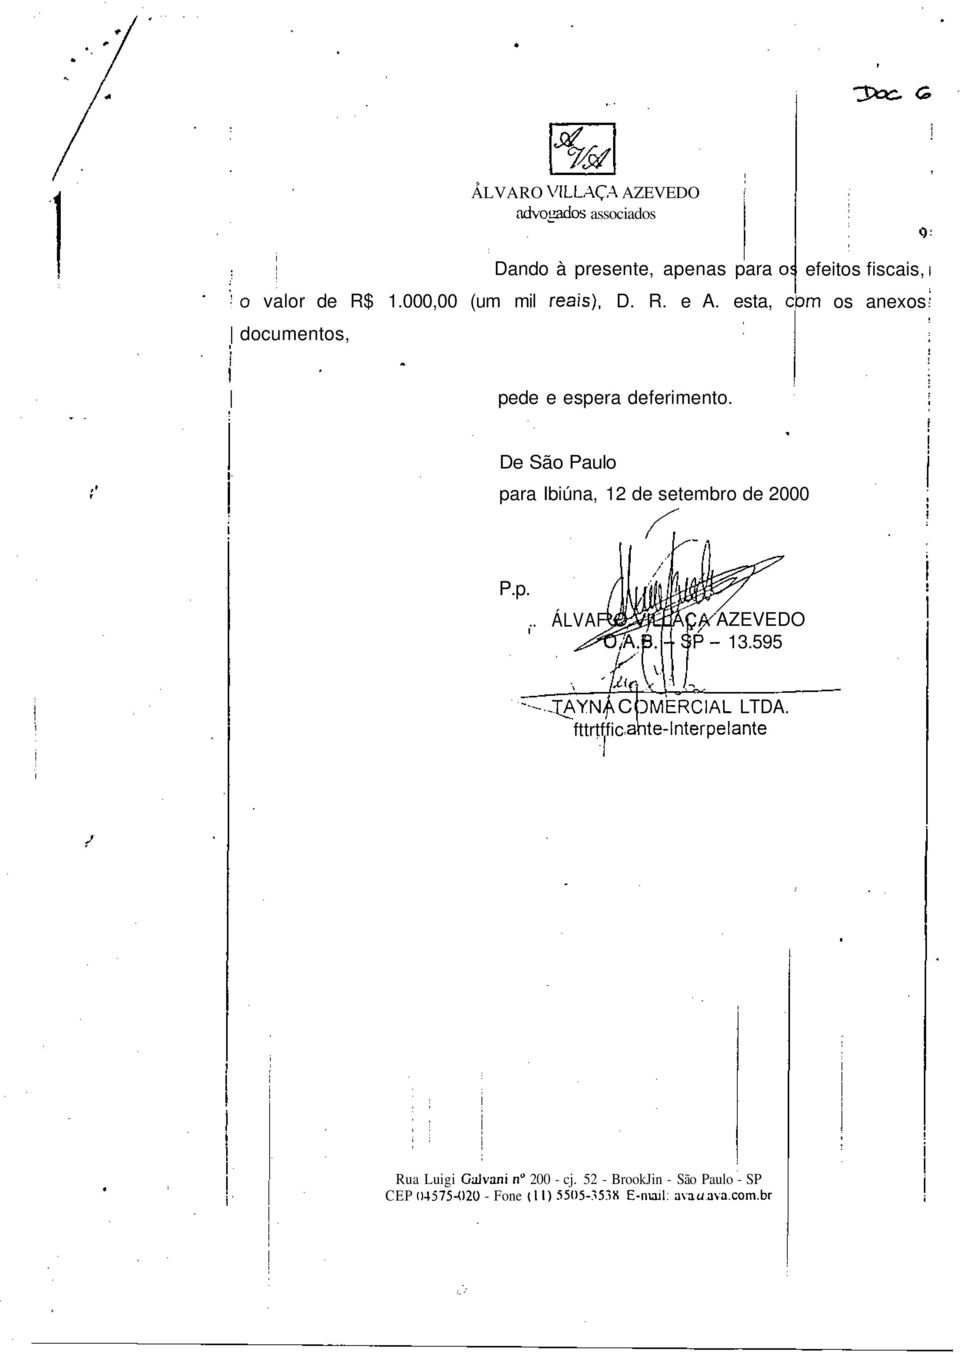 efetos fscas, os anexos De São Paulo para Ibúna, 12 de setembro de 2000» P.p... ÁLVAF AZEVEDO $P- 13.